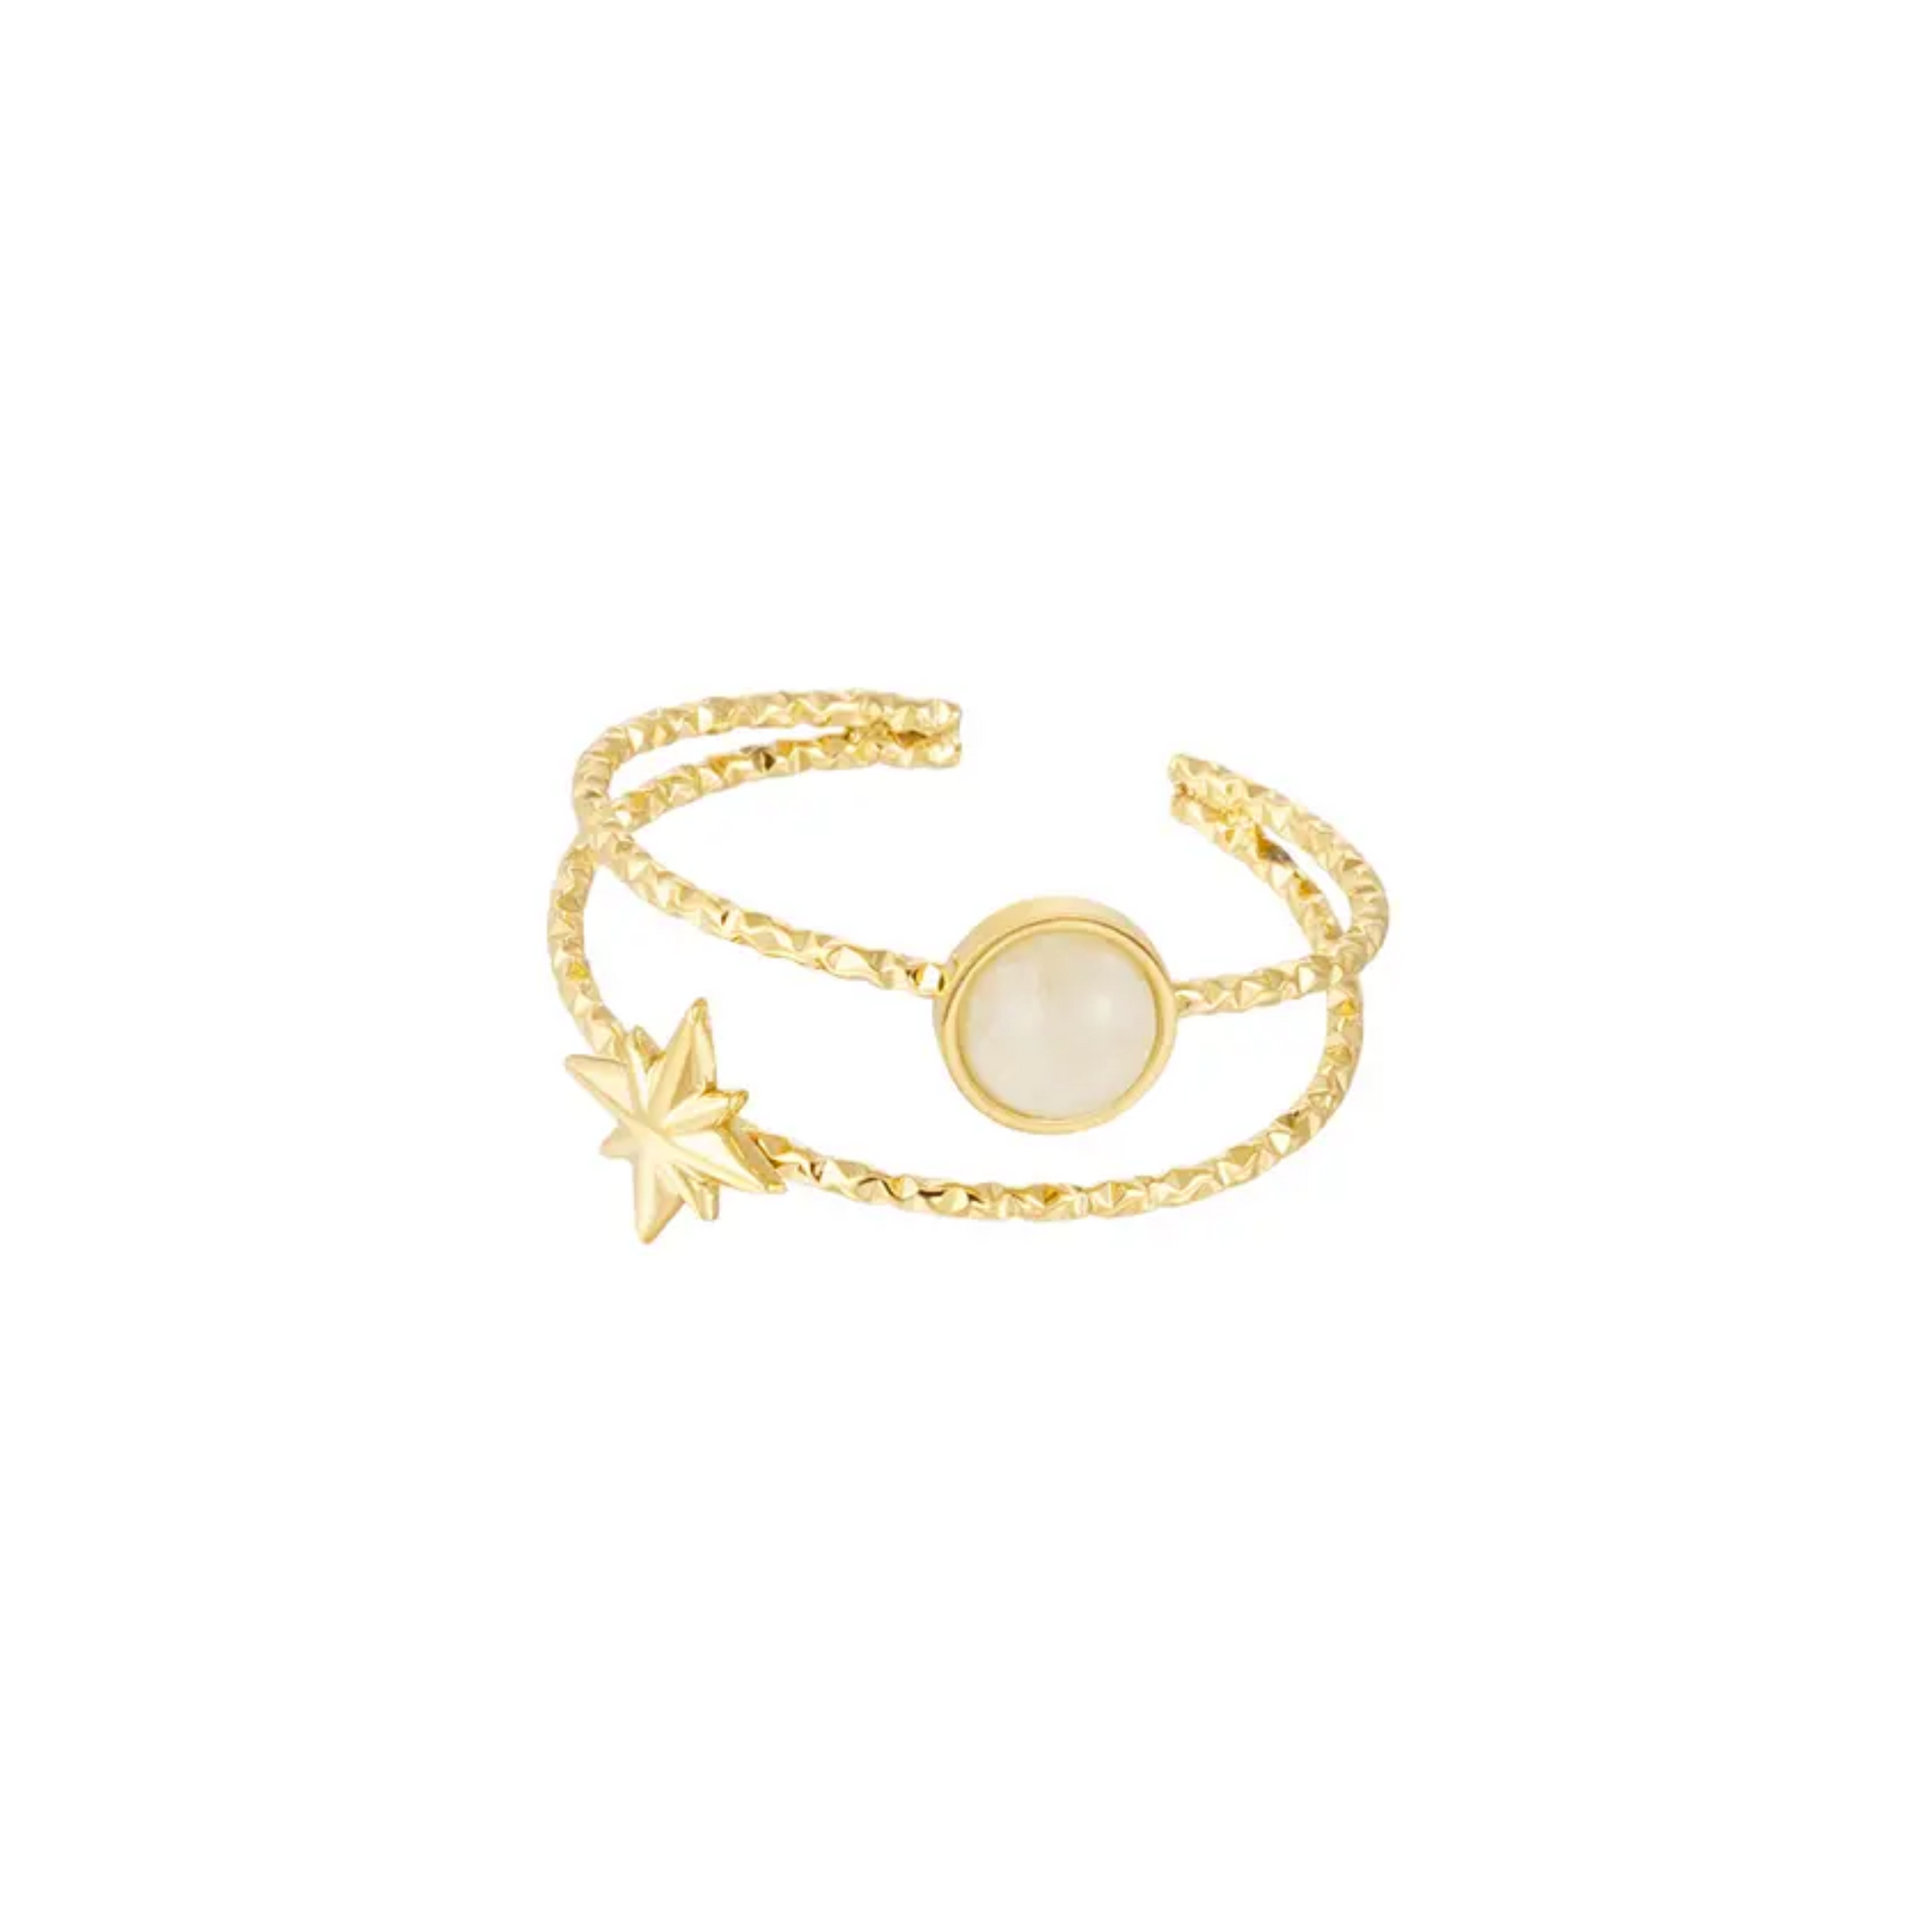 Yehwang | Dubbele ring Febe van goudkleurig stainless steel met ster & beige steentje | Conceptstore Sisalla